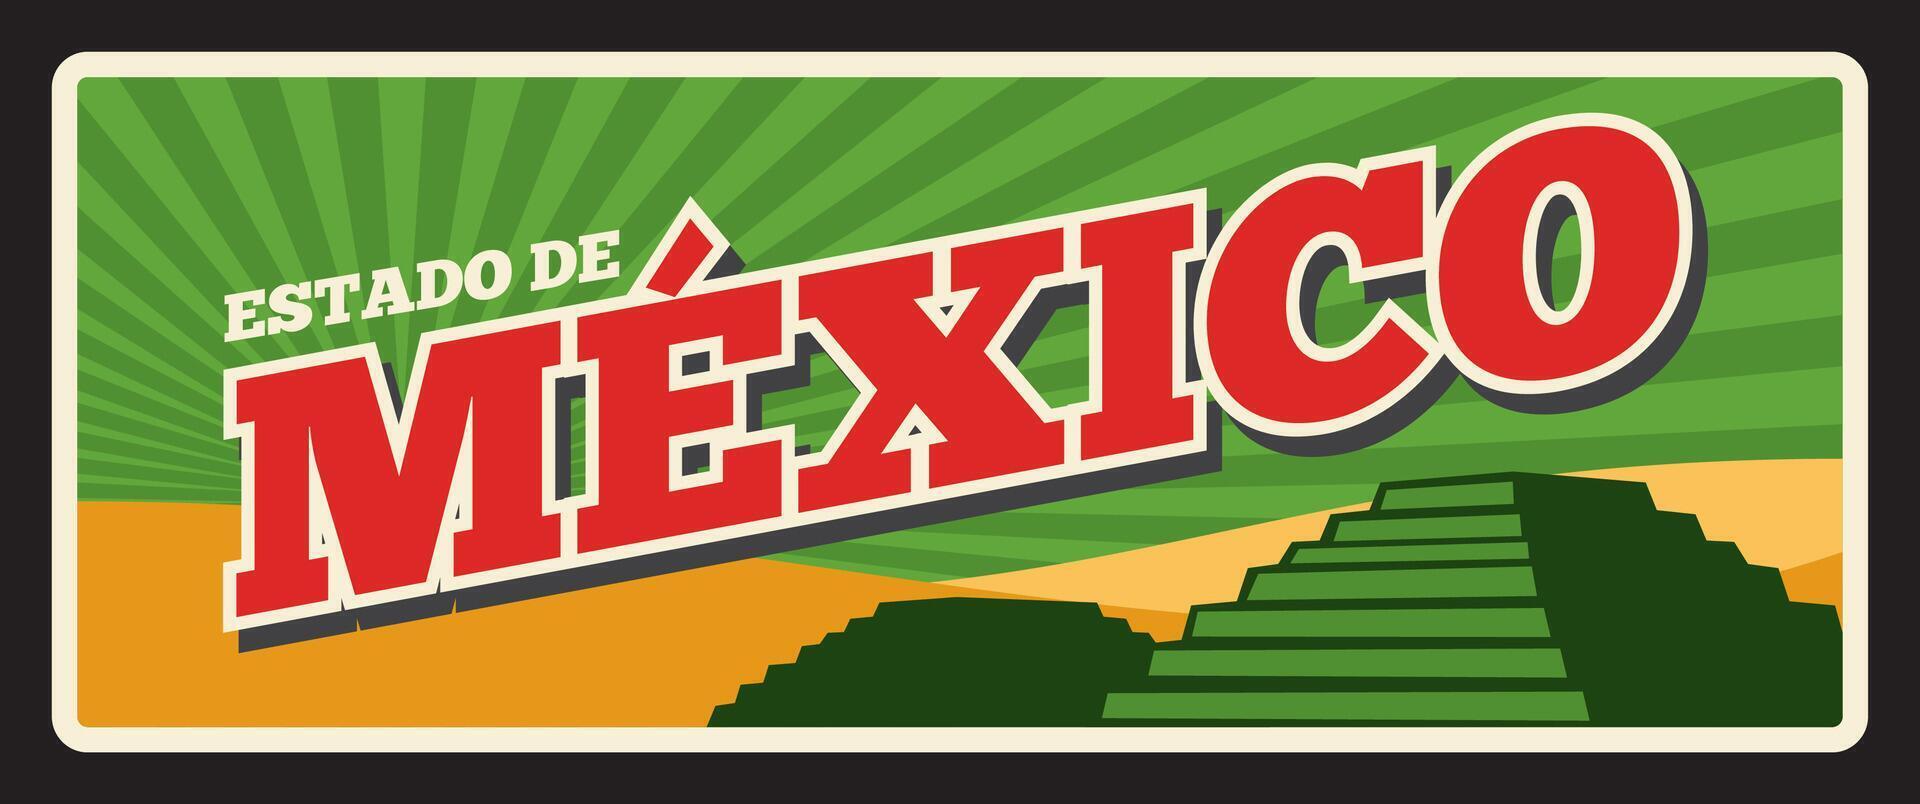 estado Delaware mexico estado retro mexicano viaje plato vector